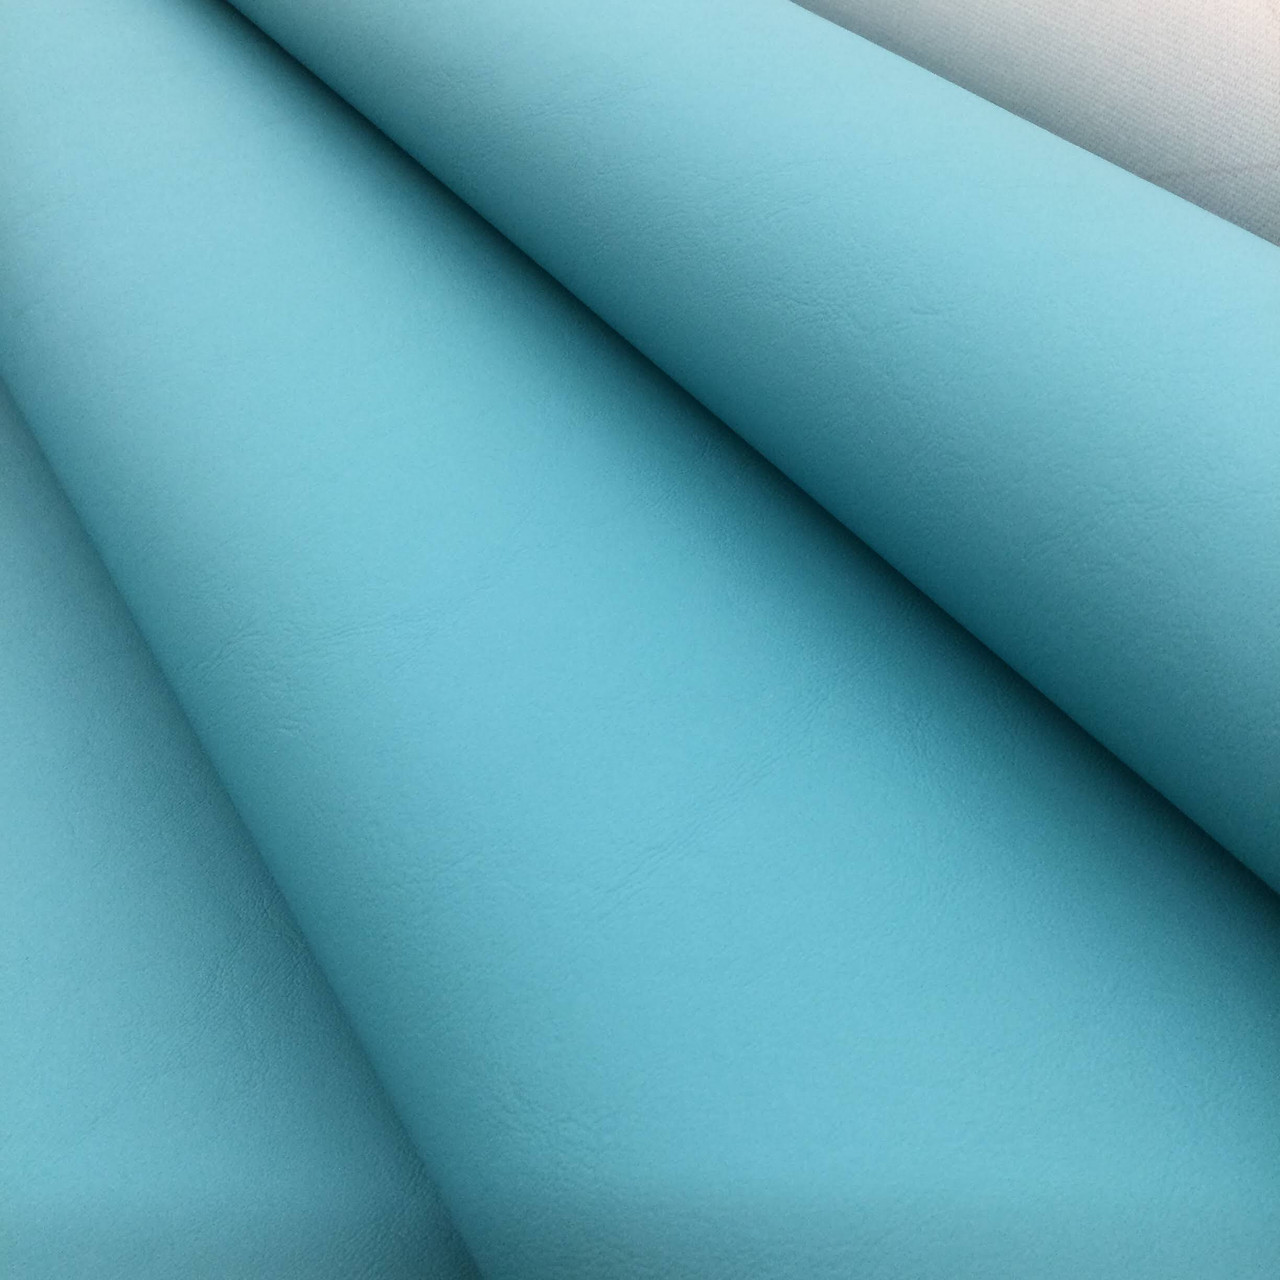  Butarfe Soft Vinyl Upholstery Fabric Waterproof Marine